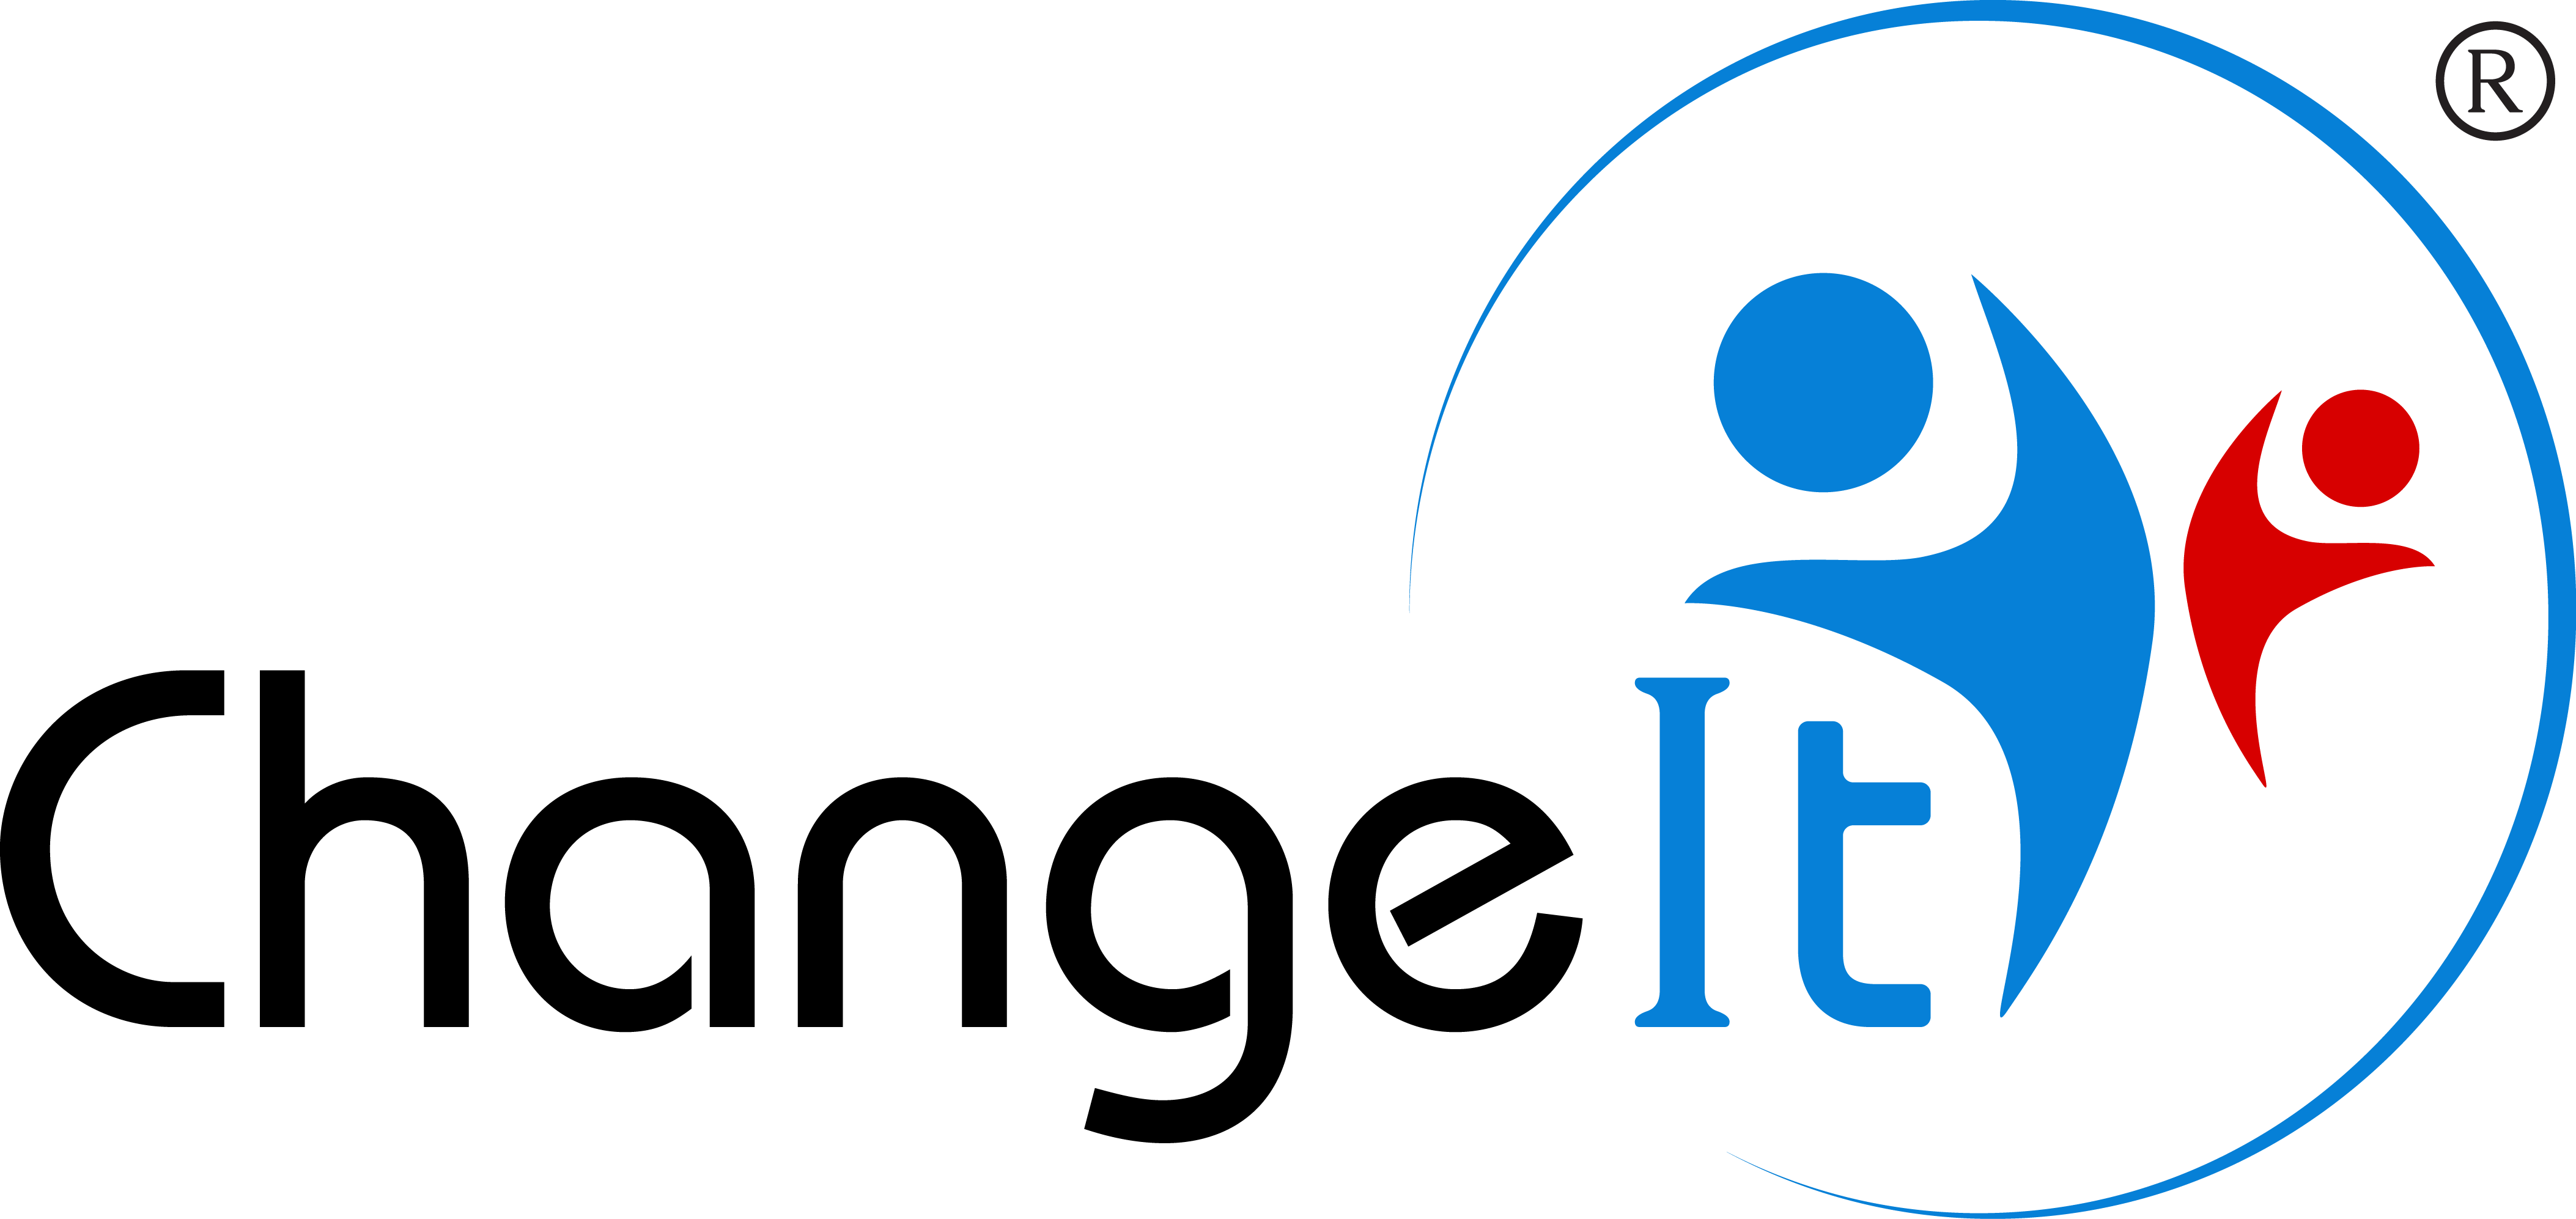 ChangeIt logo